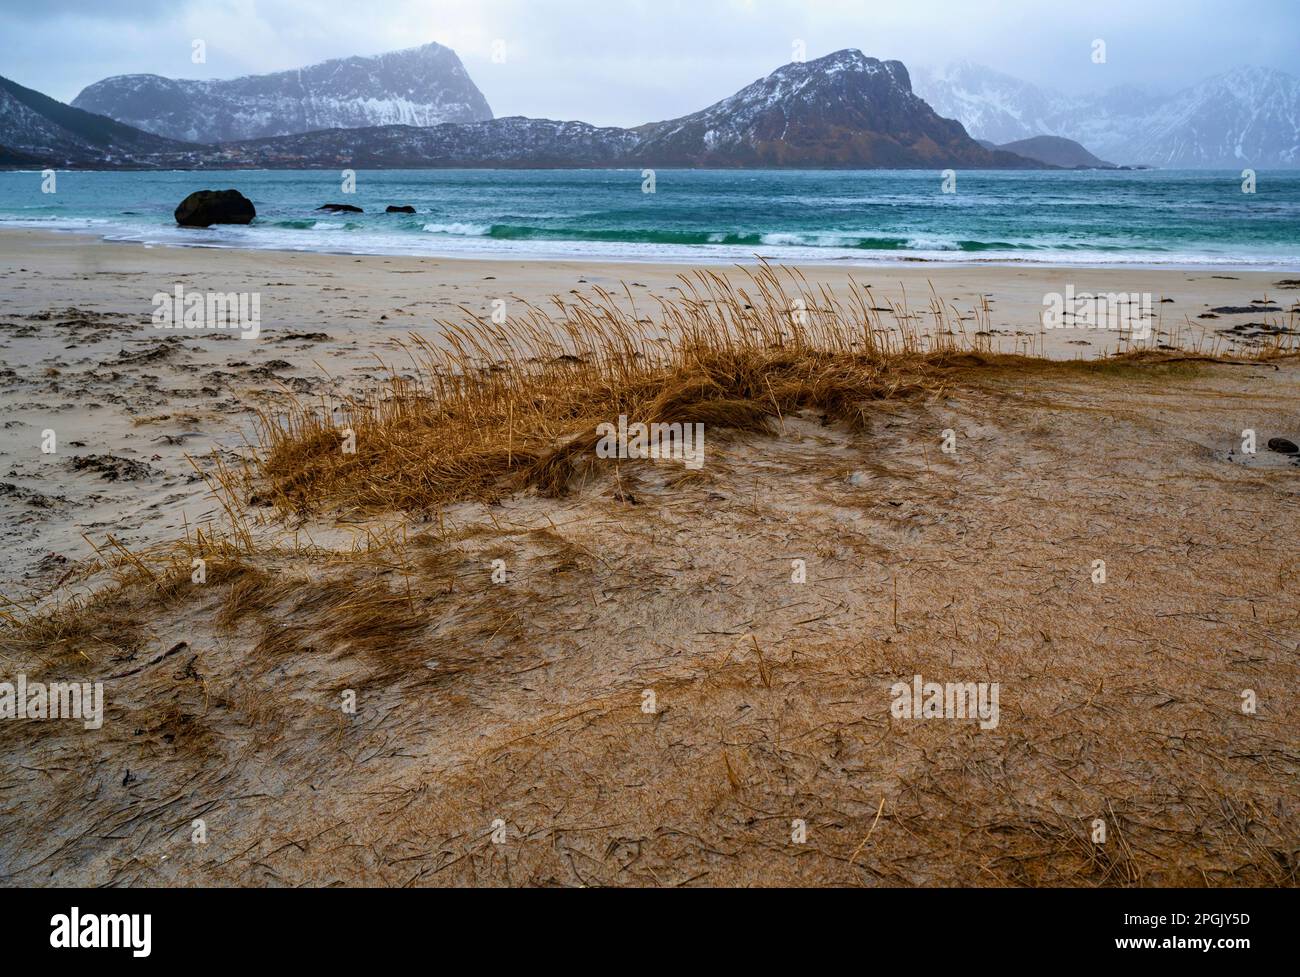 Küste mit Gras am Strand, türkisfarbenem Meer und steilen felsigen Bergen am Horizont. Der Winter endet am Strand Haukland, den Lofoten-Inseln, Norwegen. Stockfoto